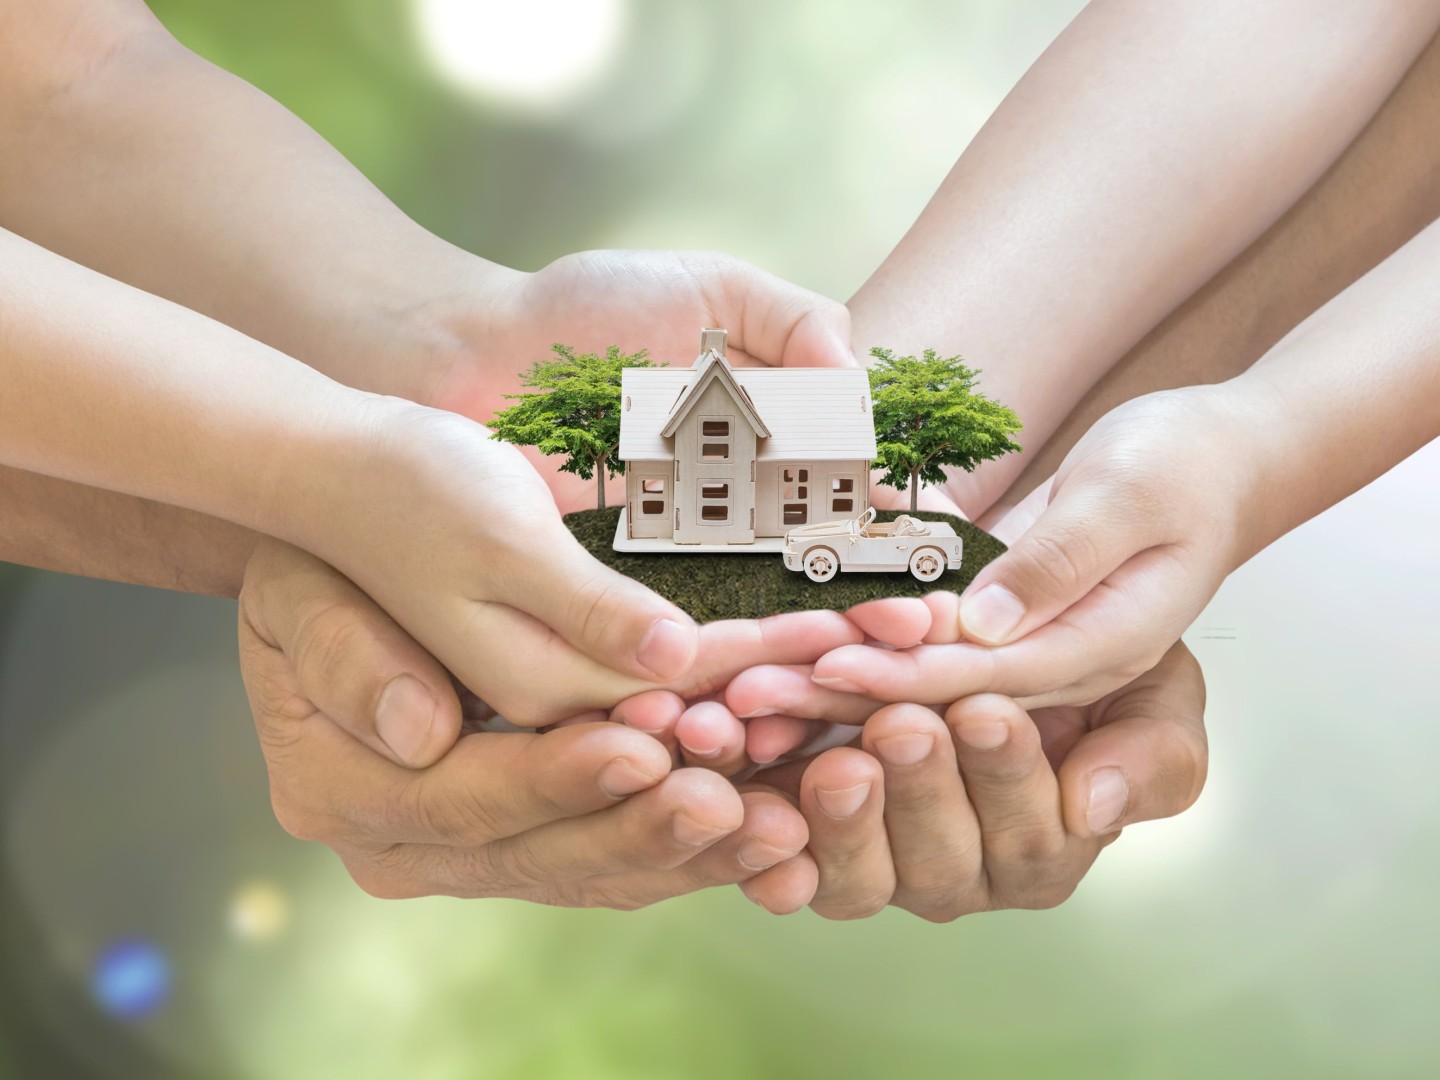 Hausbesitzer*innen genießen einen verbesserten Versicherungsschutz durch Innovationsklausel der Gothaer Wohngebäudeversicherung